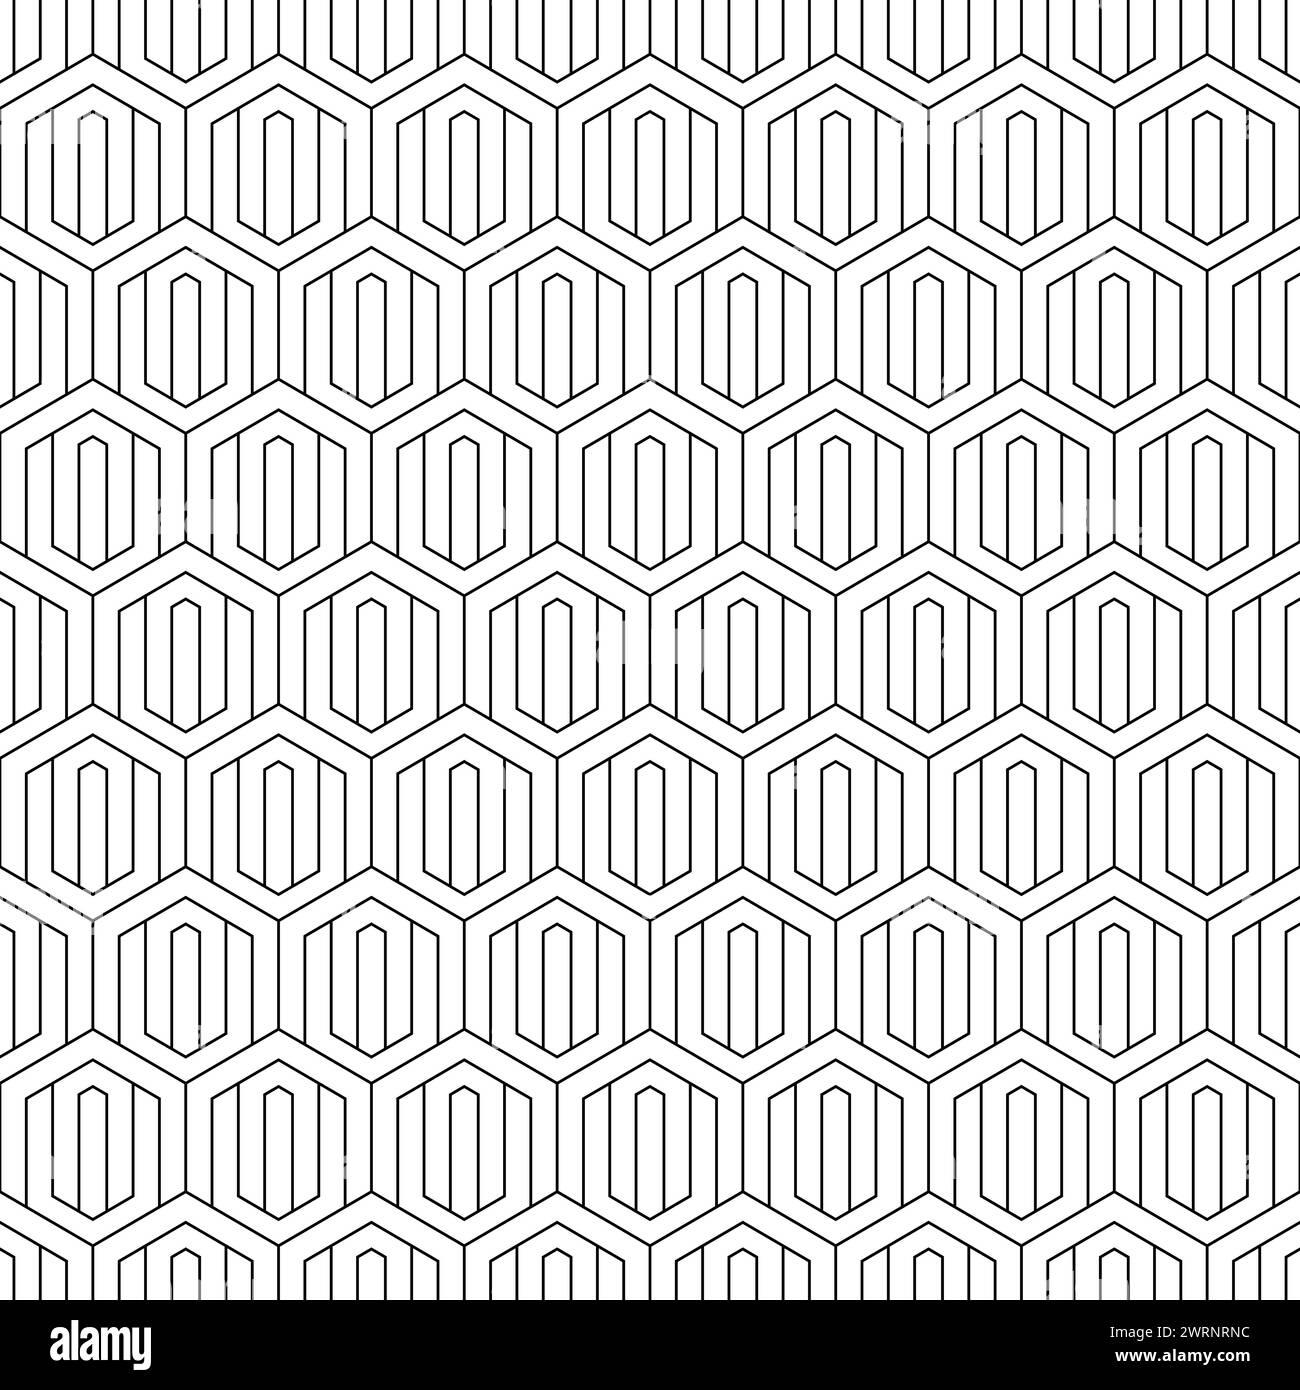 Geometrisches nahtloses Muster. Sich wiederholendes sechseckiges Gitter. Wiederholte schwarze Waben isoliert auf weißem Hintergrund. Moderne abstrakte, sechseckige Muster Stock Vektor